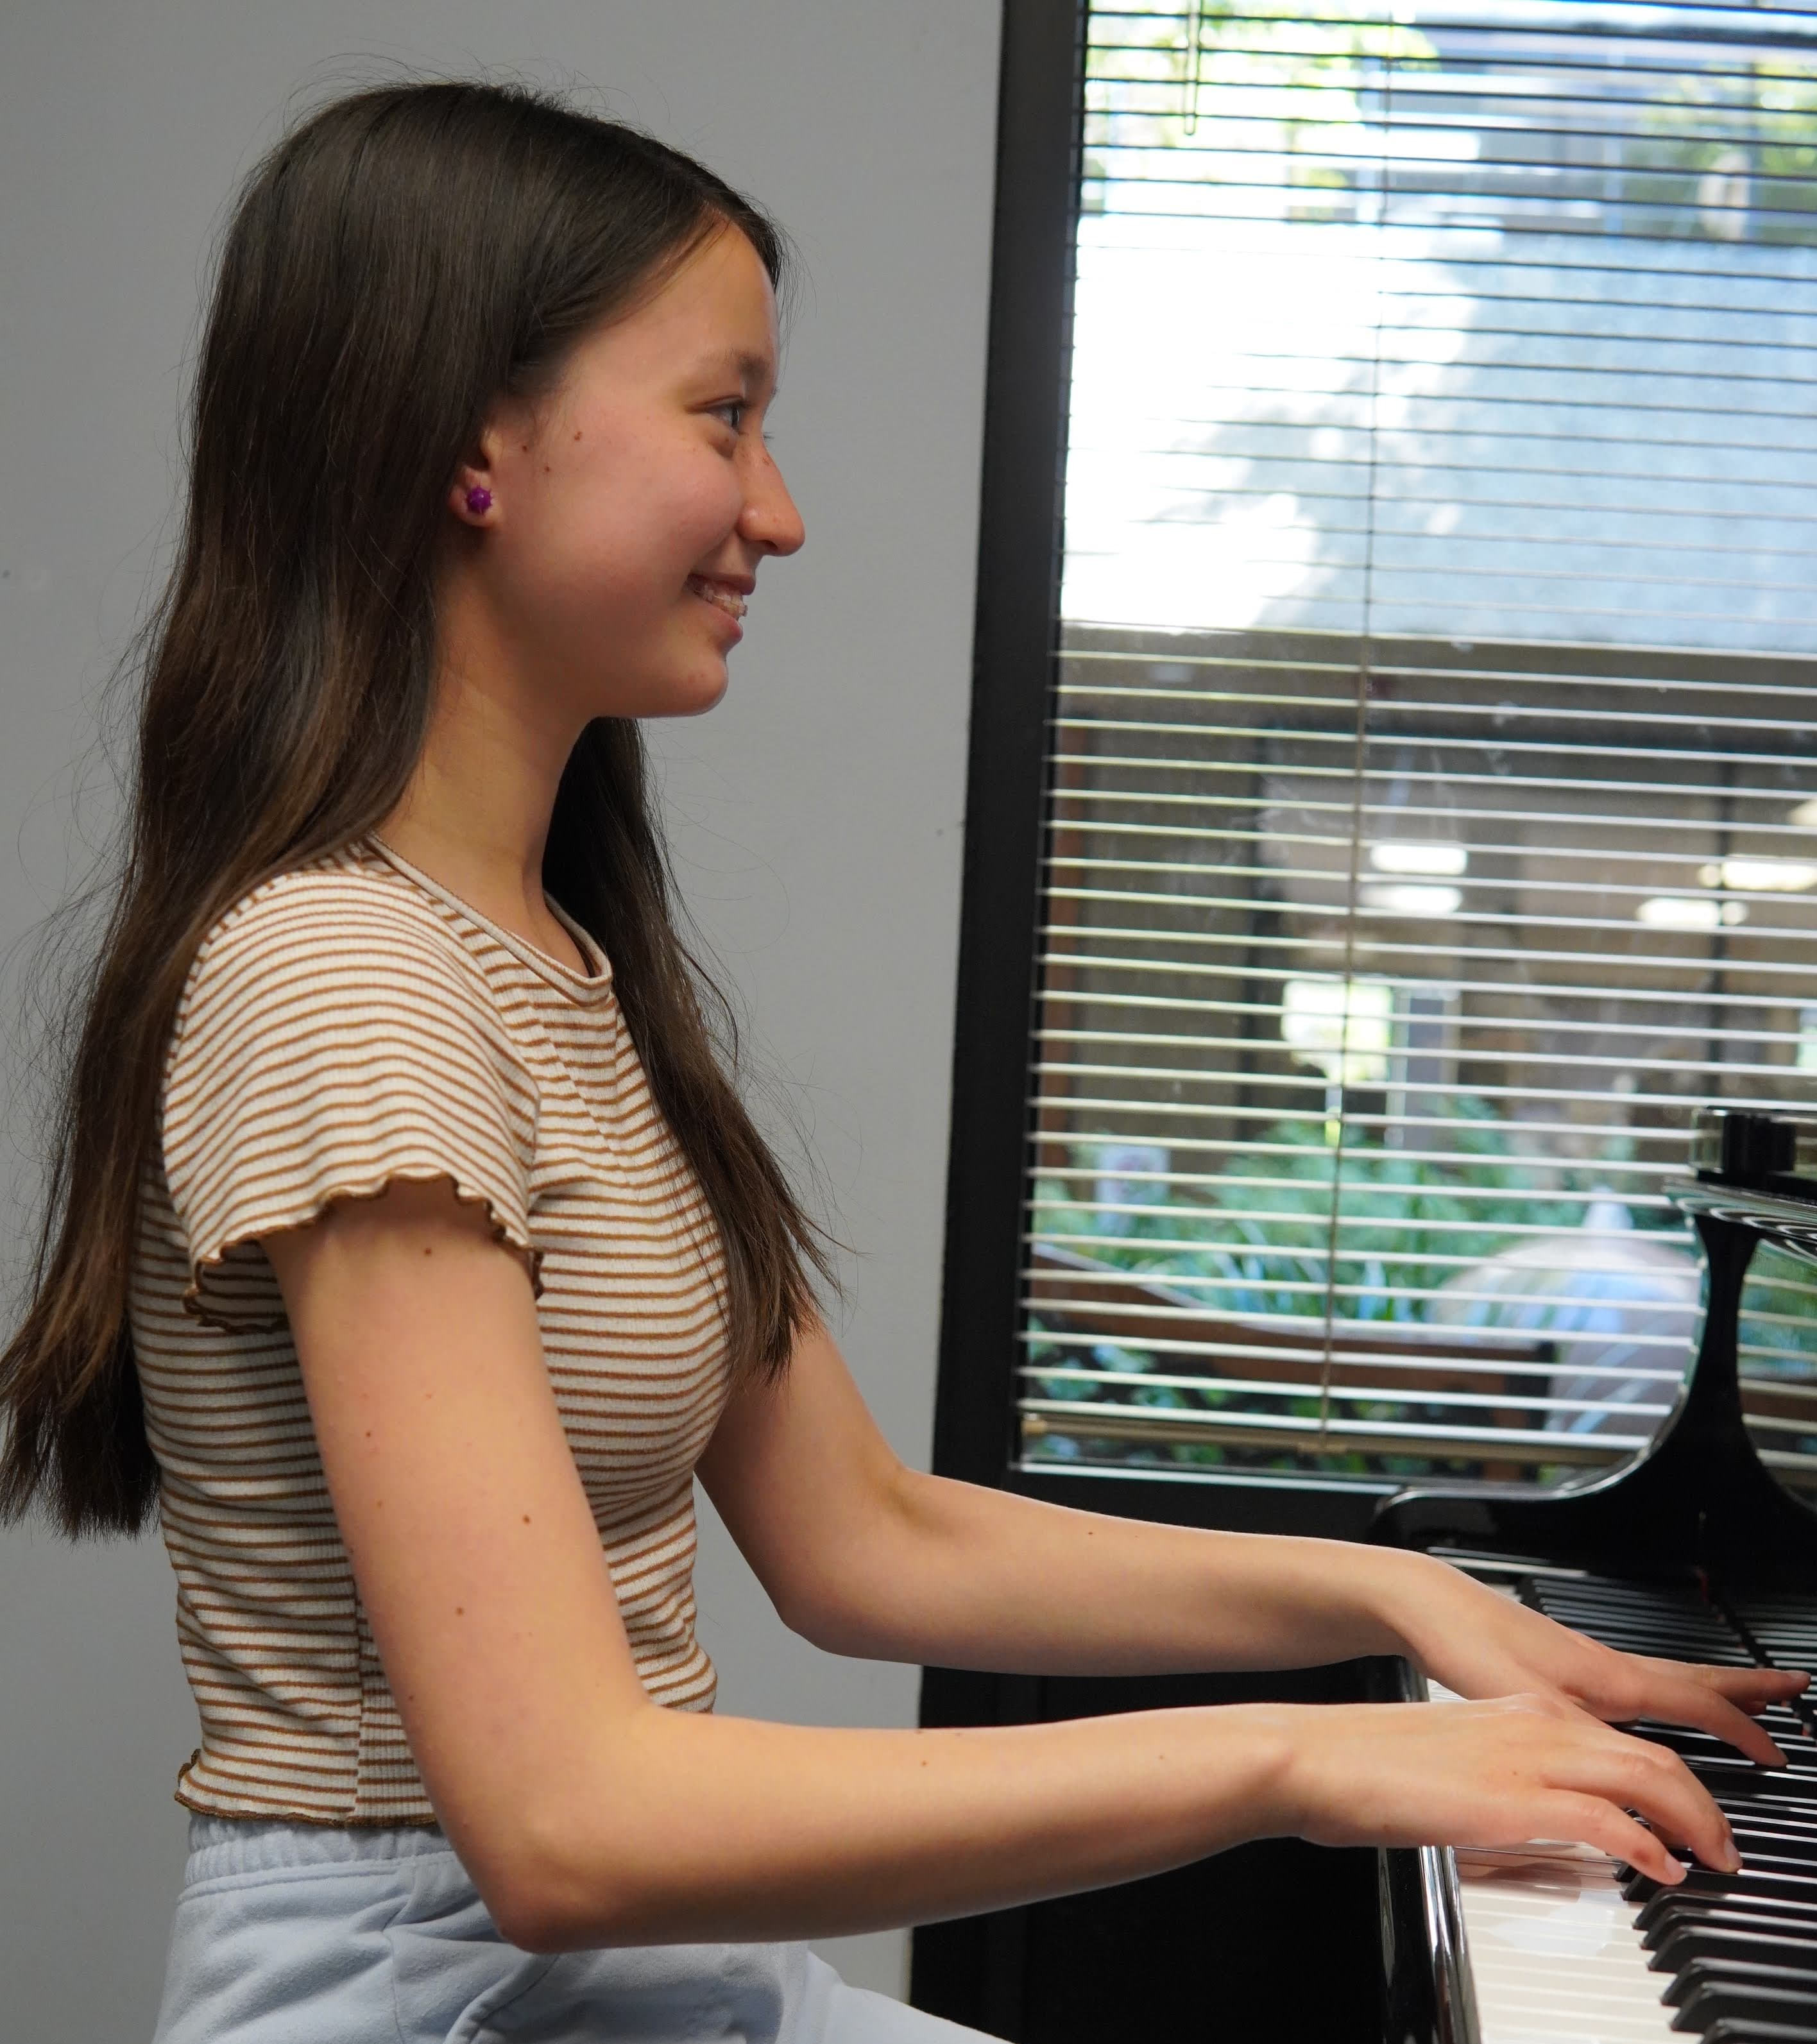 Smiling girl at piano